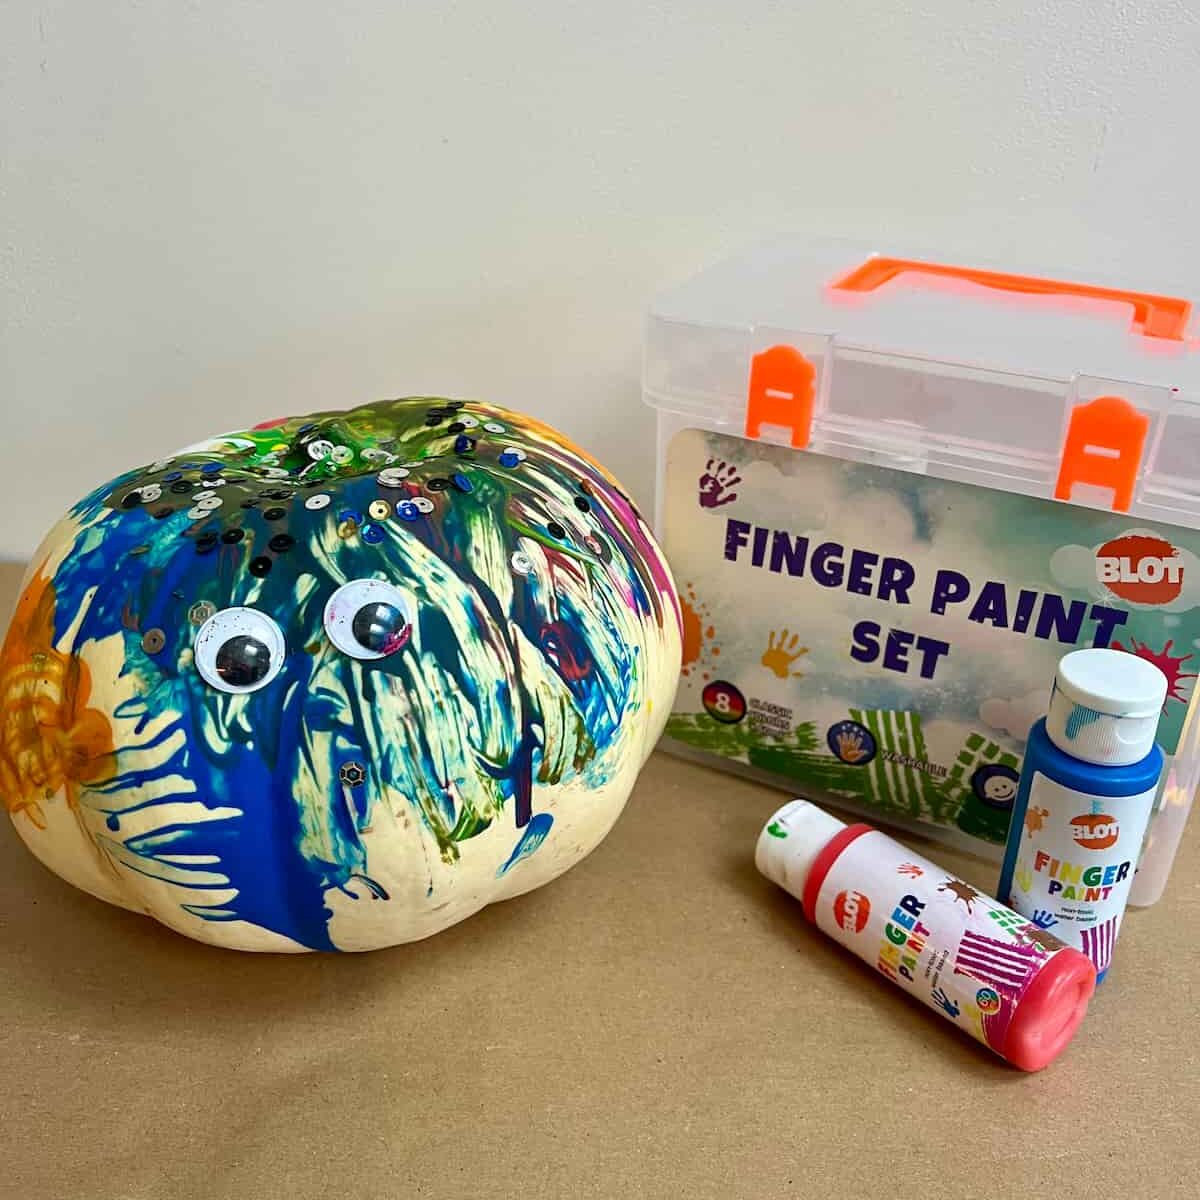 blot finger paint for painting pumpkins